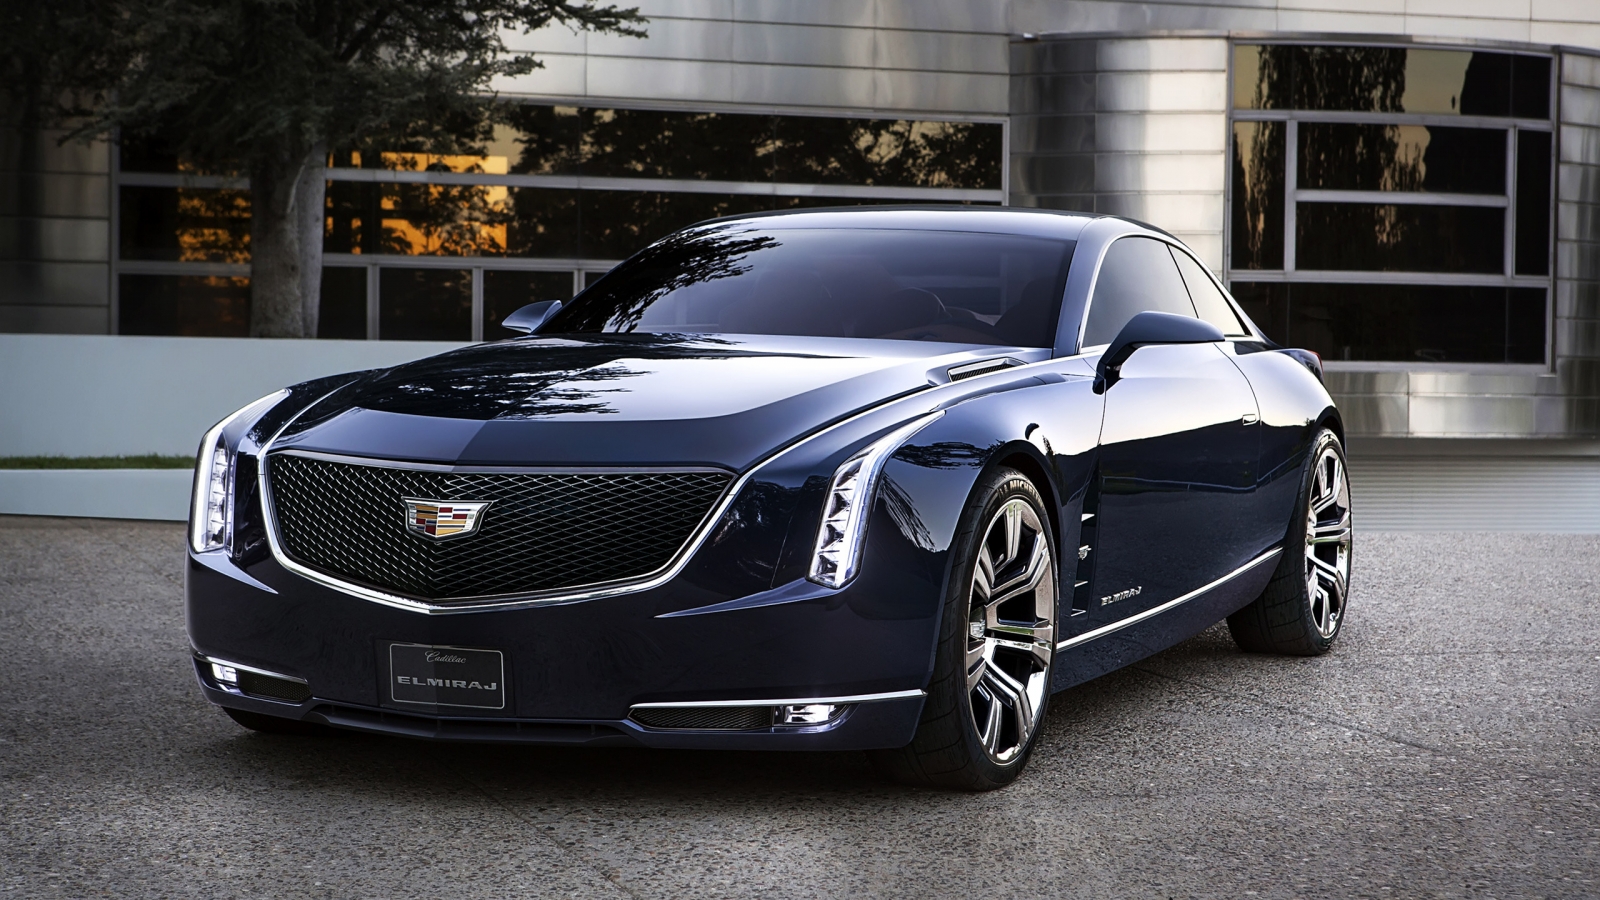 2013 Cadillac Elmiraj Concept for 1600 x 900 HDTV resolution